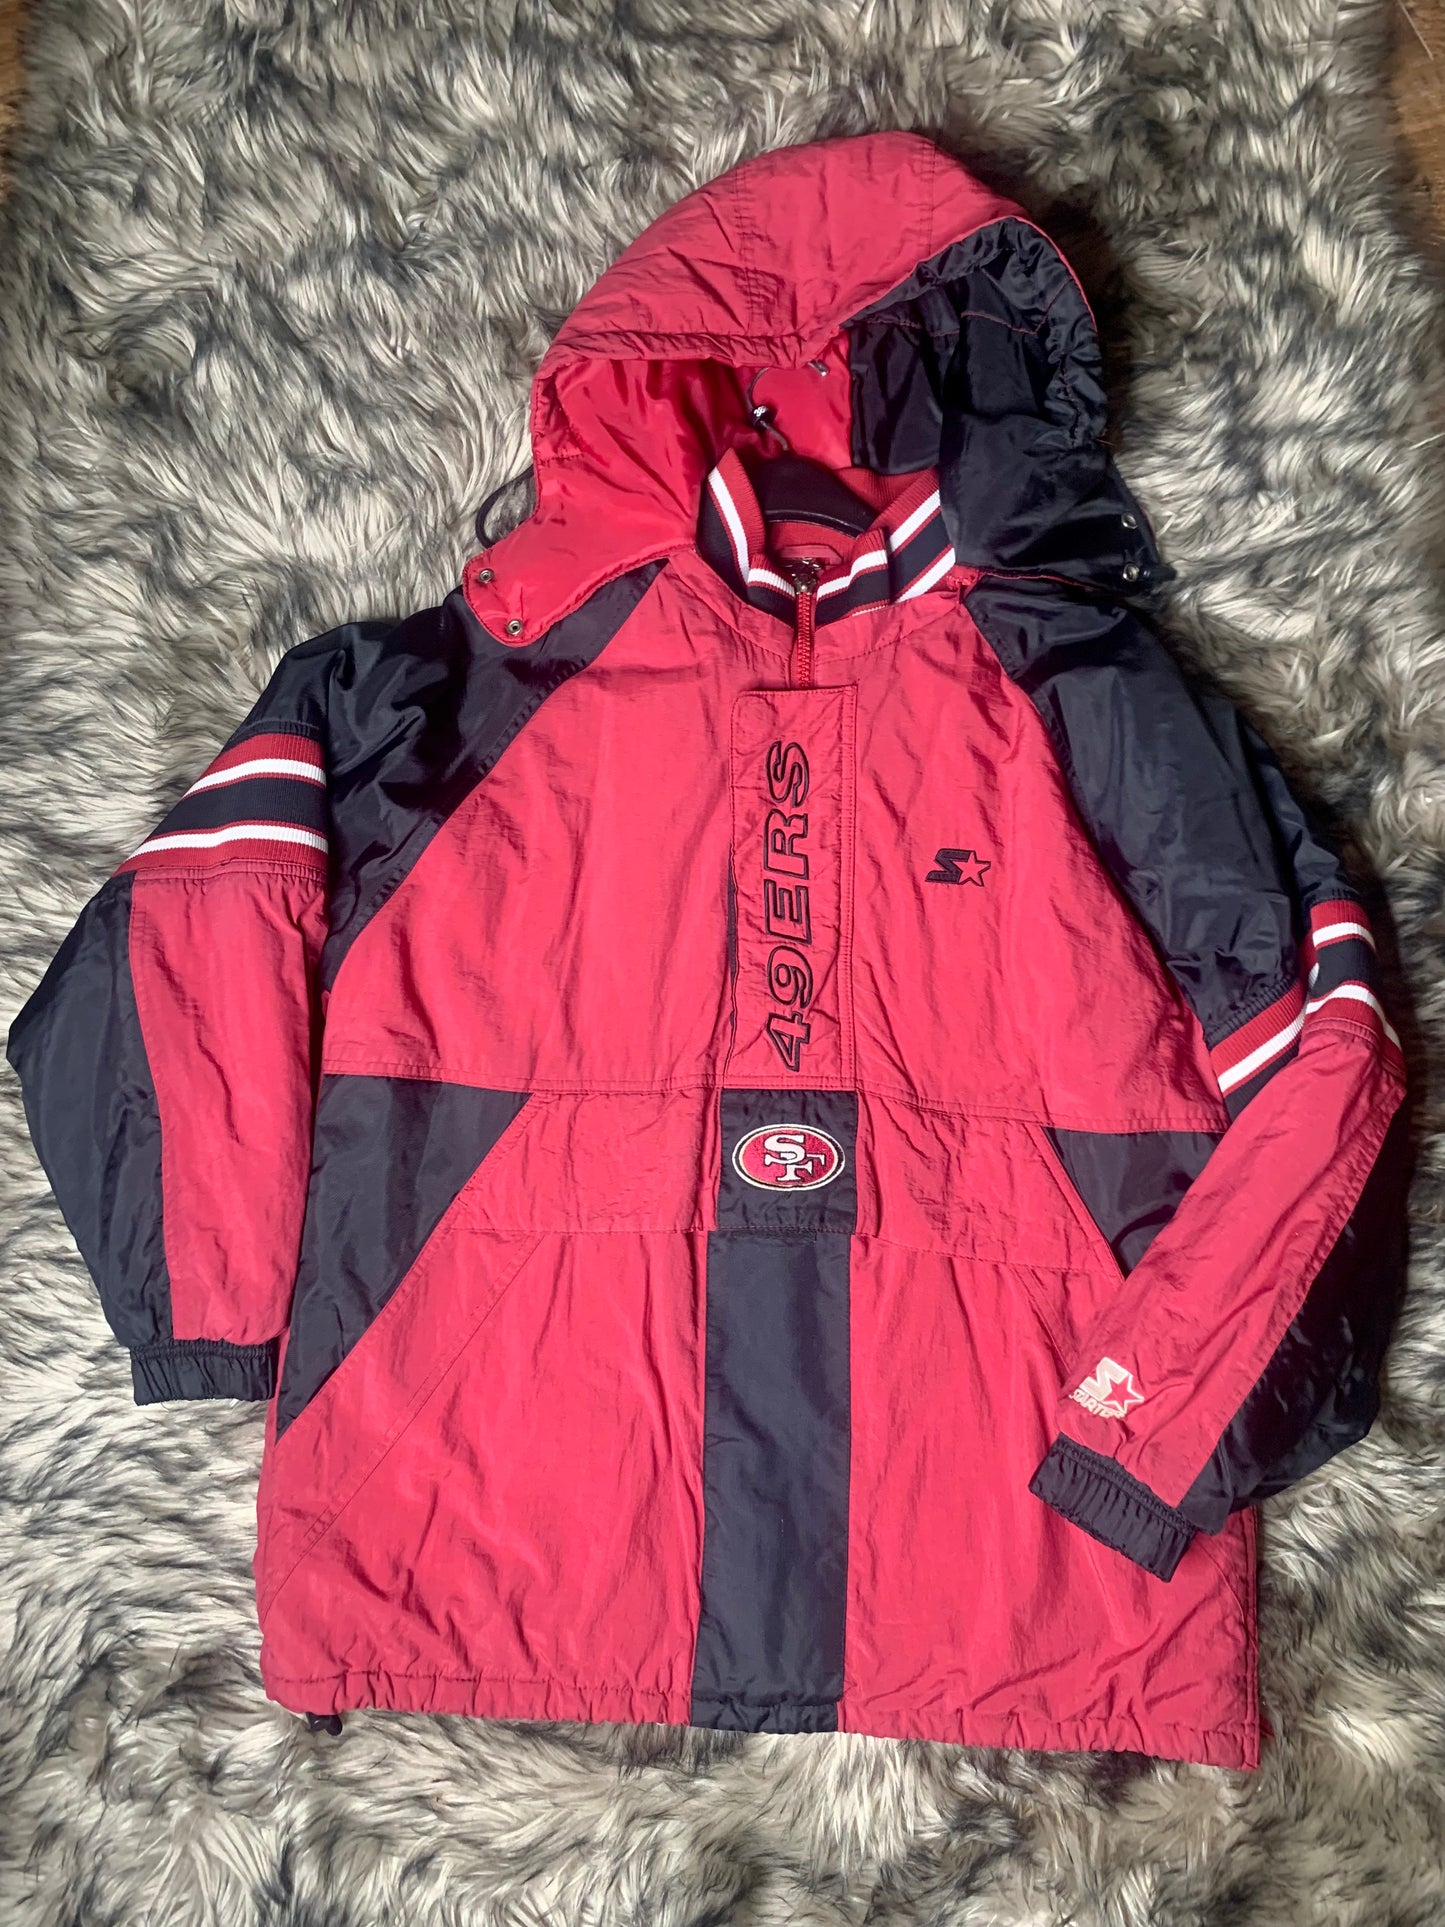 Vintage 90s San Francisco 49ers NFL Coat Jacket